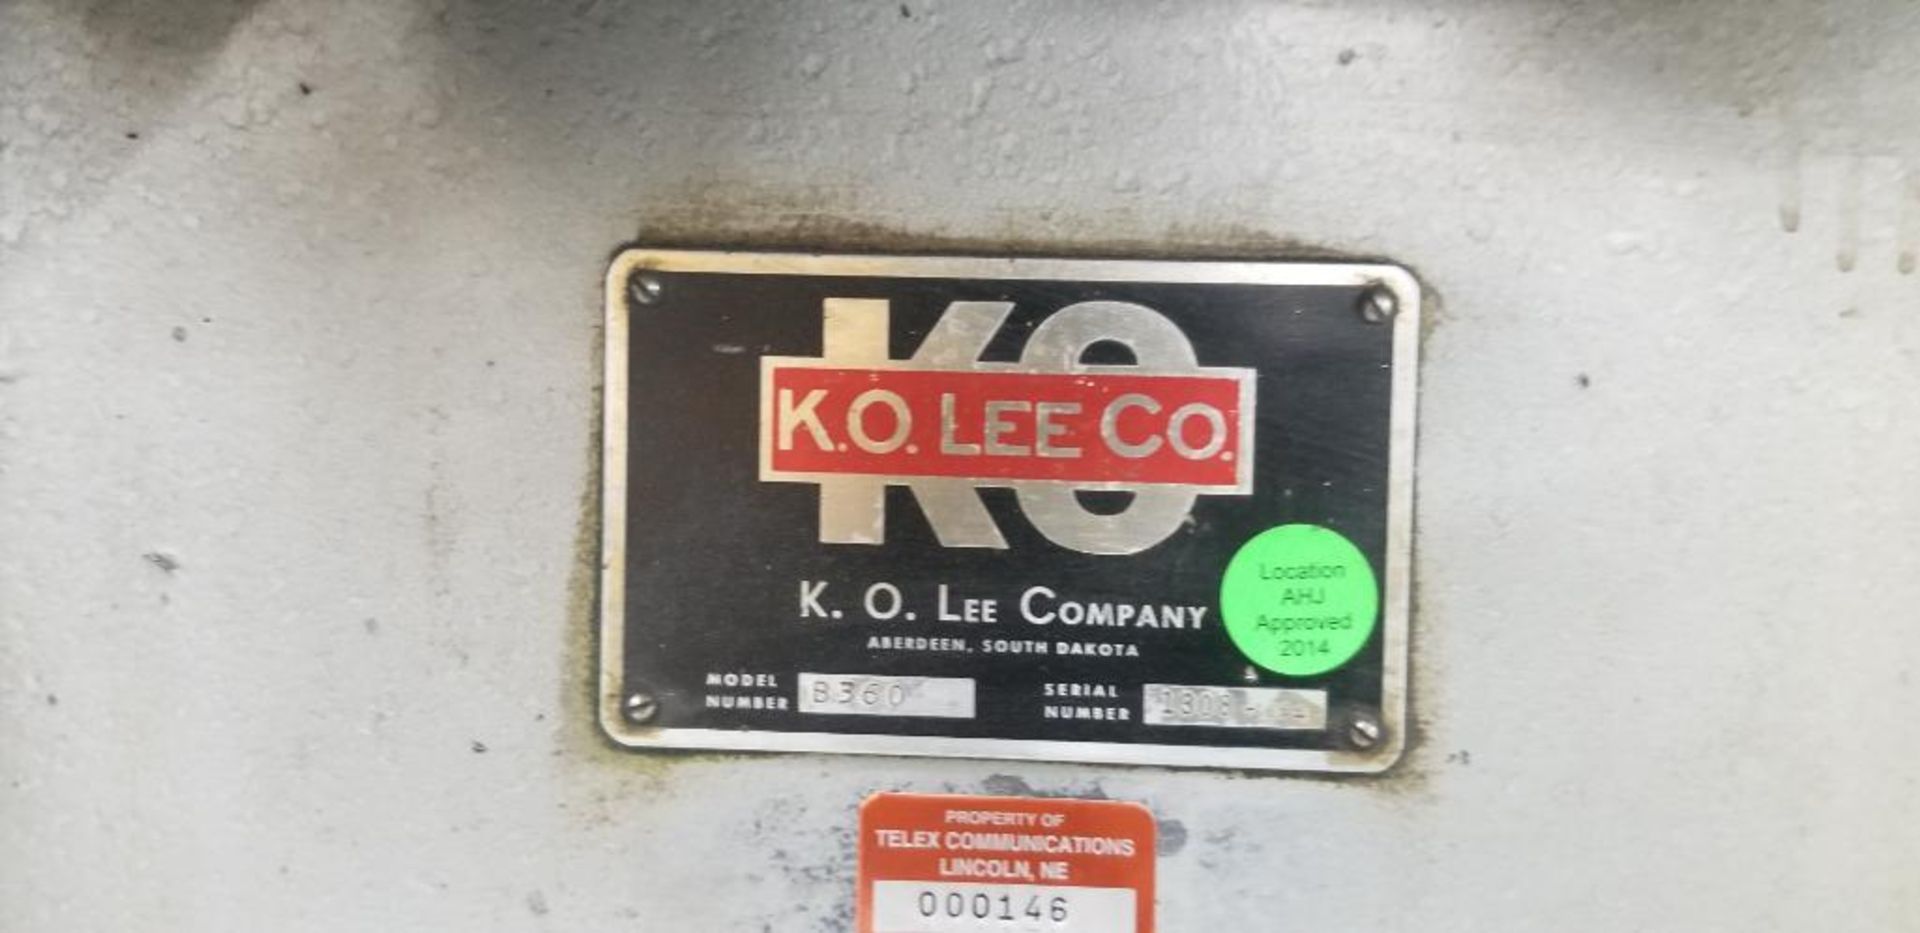 K. O. Lee Model B360 Tool & Surface Grinder, 220V/440V 3-Phase - Image 3 of 3